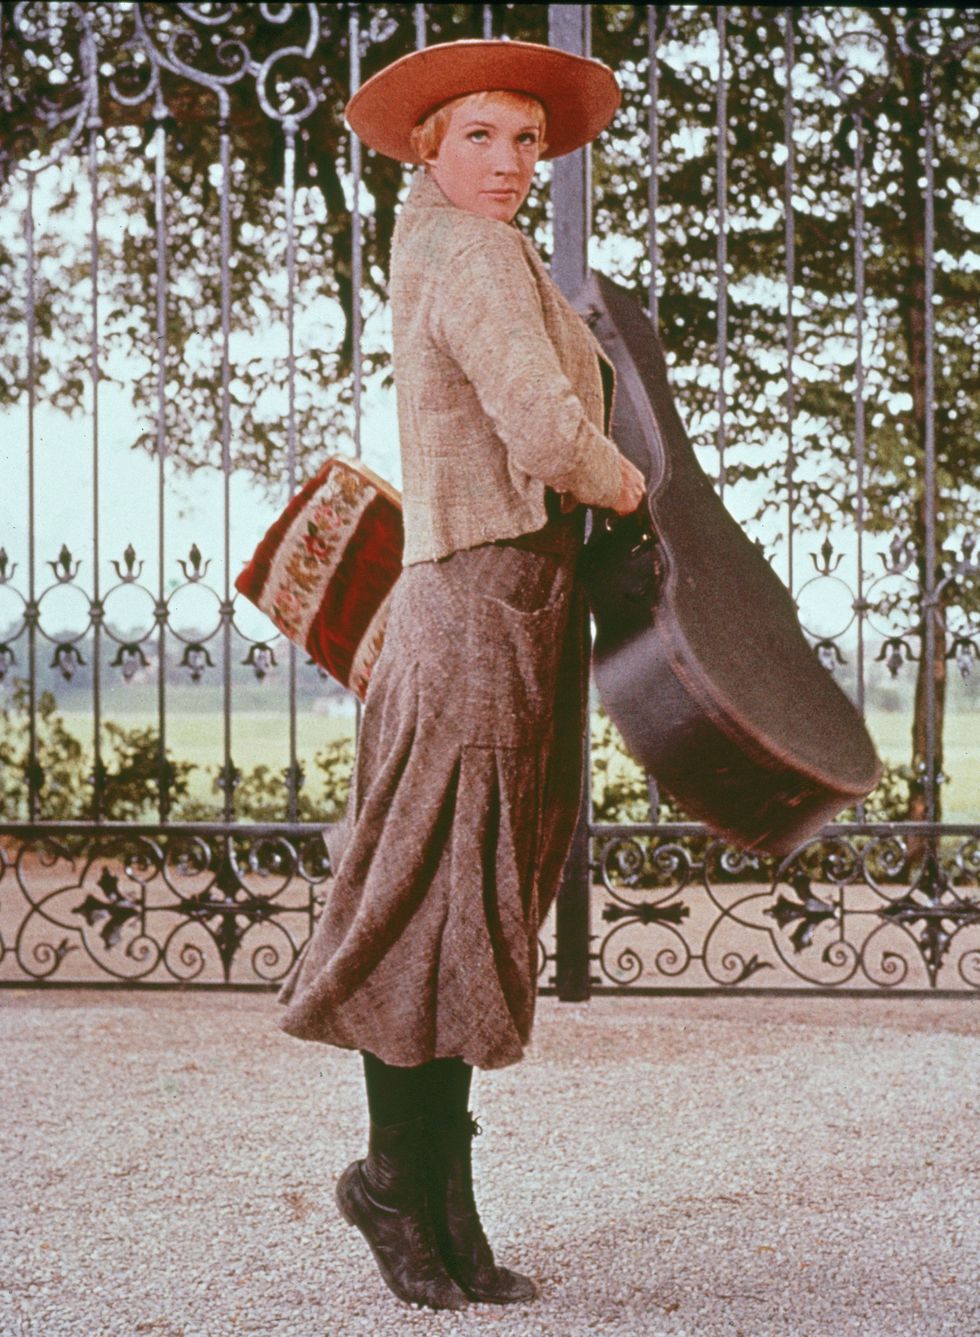 <p>《真善美》是許多人的童年回憶，女主角 Maria Von Trapp 由知名演員 Julie Andrews 飾演，頂著一頭凌亂的金色短髮，與她的個性一樣鮮明又活潑，令人印象深刻。</p>